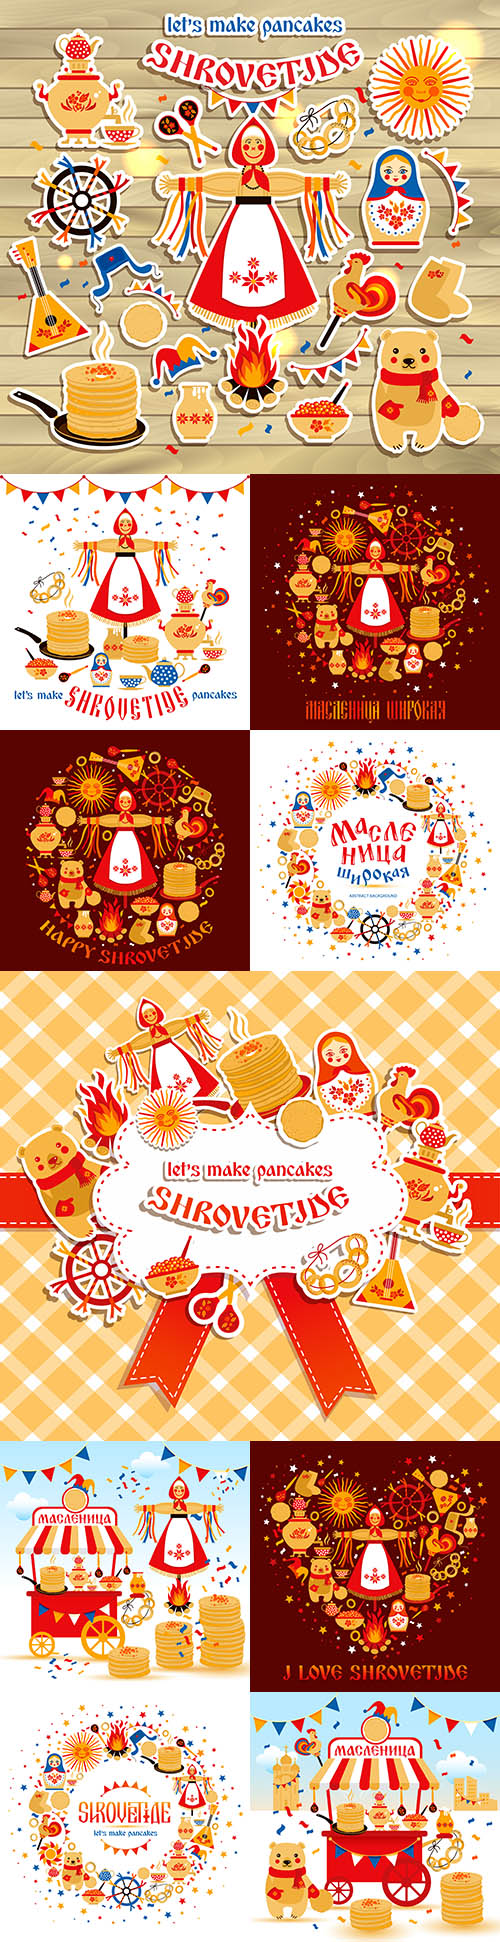 Wide Shrovetide national holiday and design elements illustration
